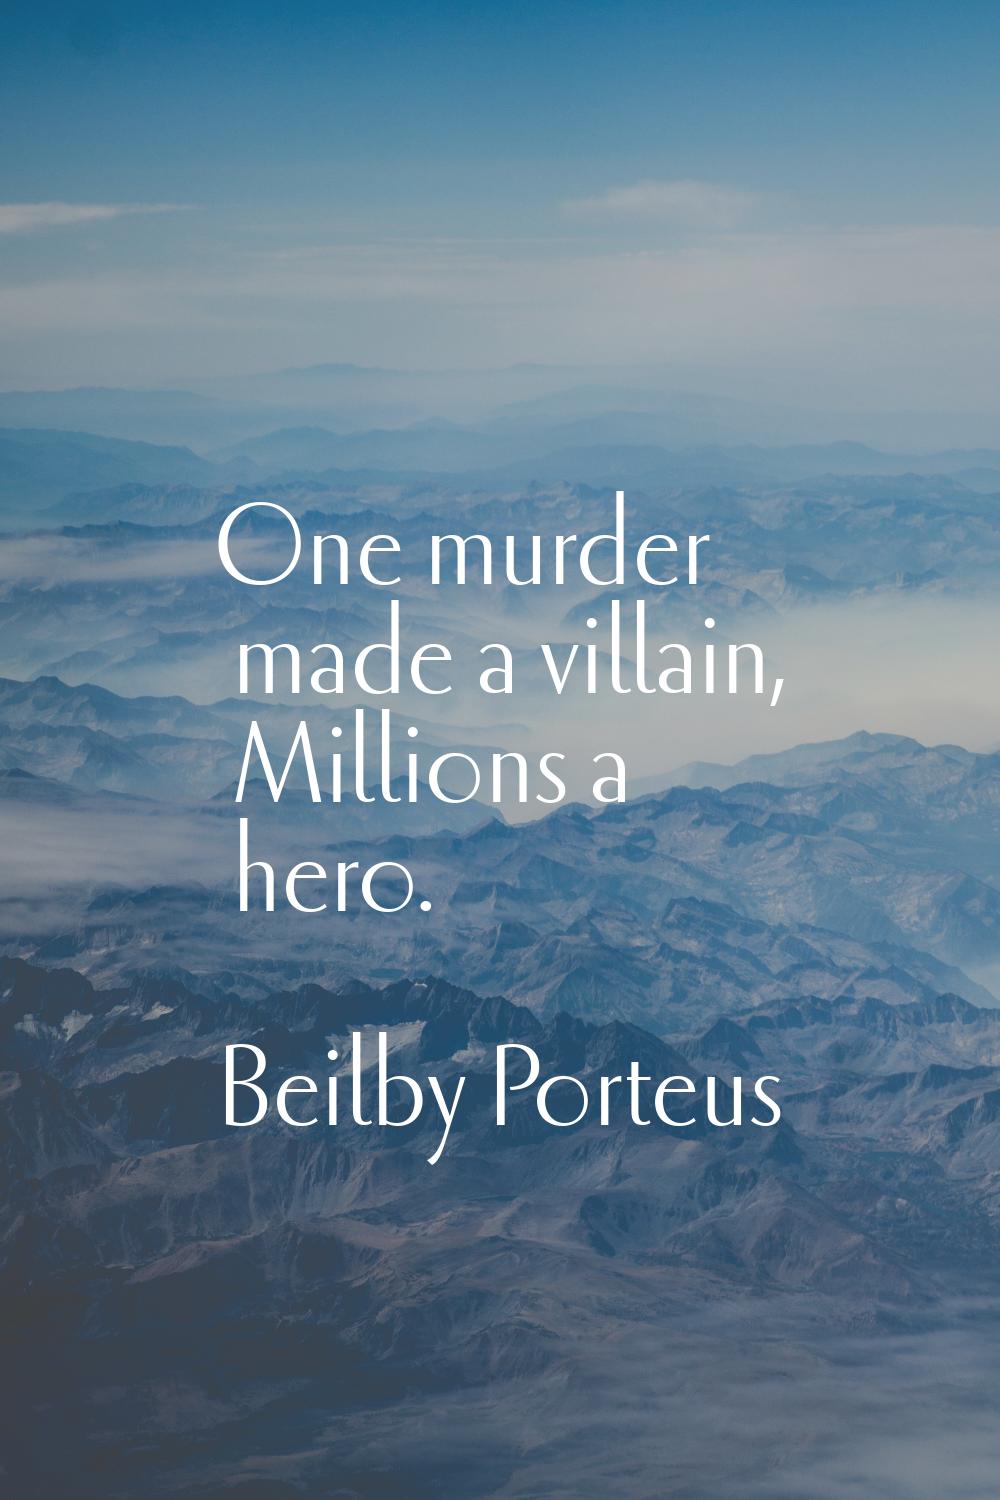 One murder made a villain, Millions a hero.